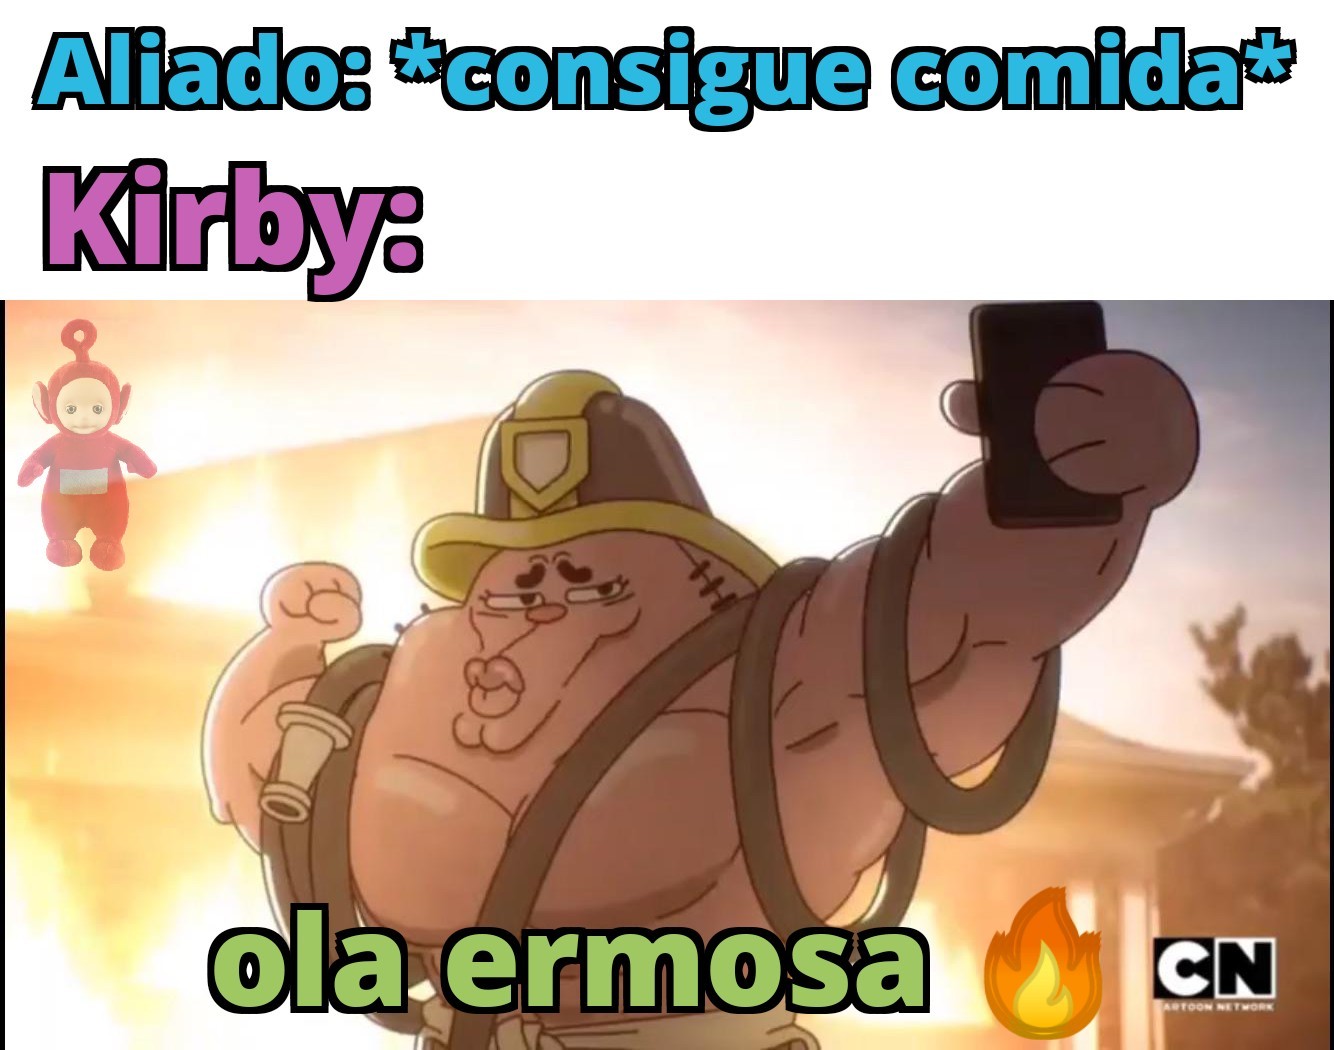 Kirby is gay confirmed?!?! - meme